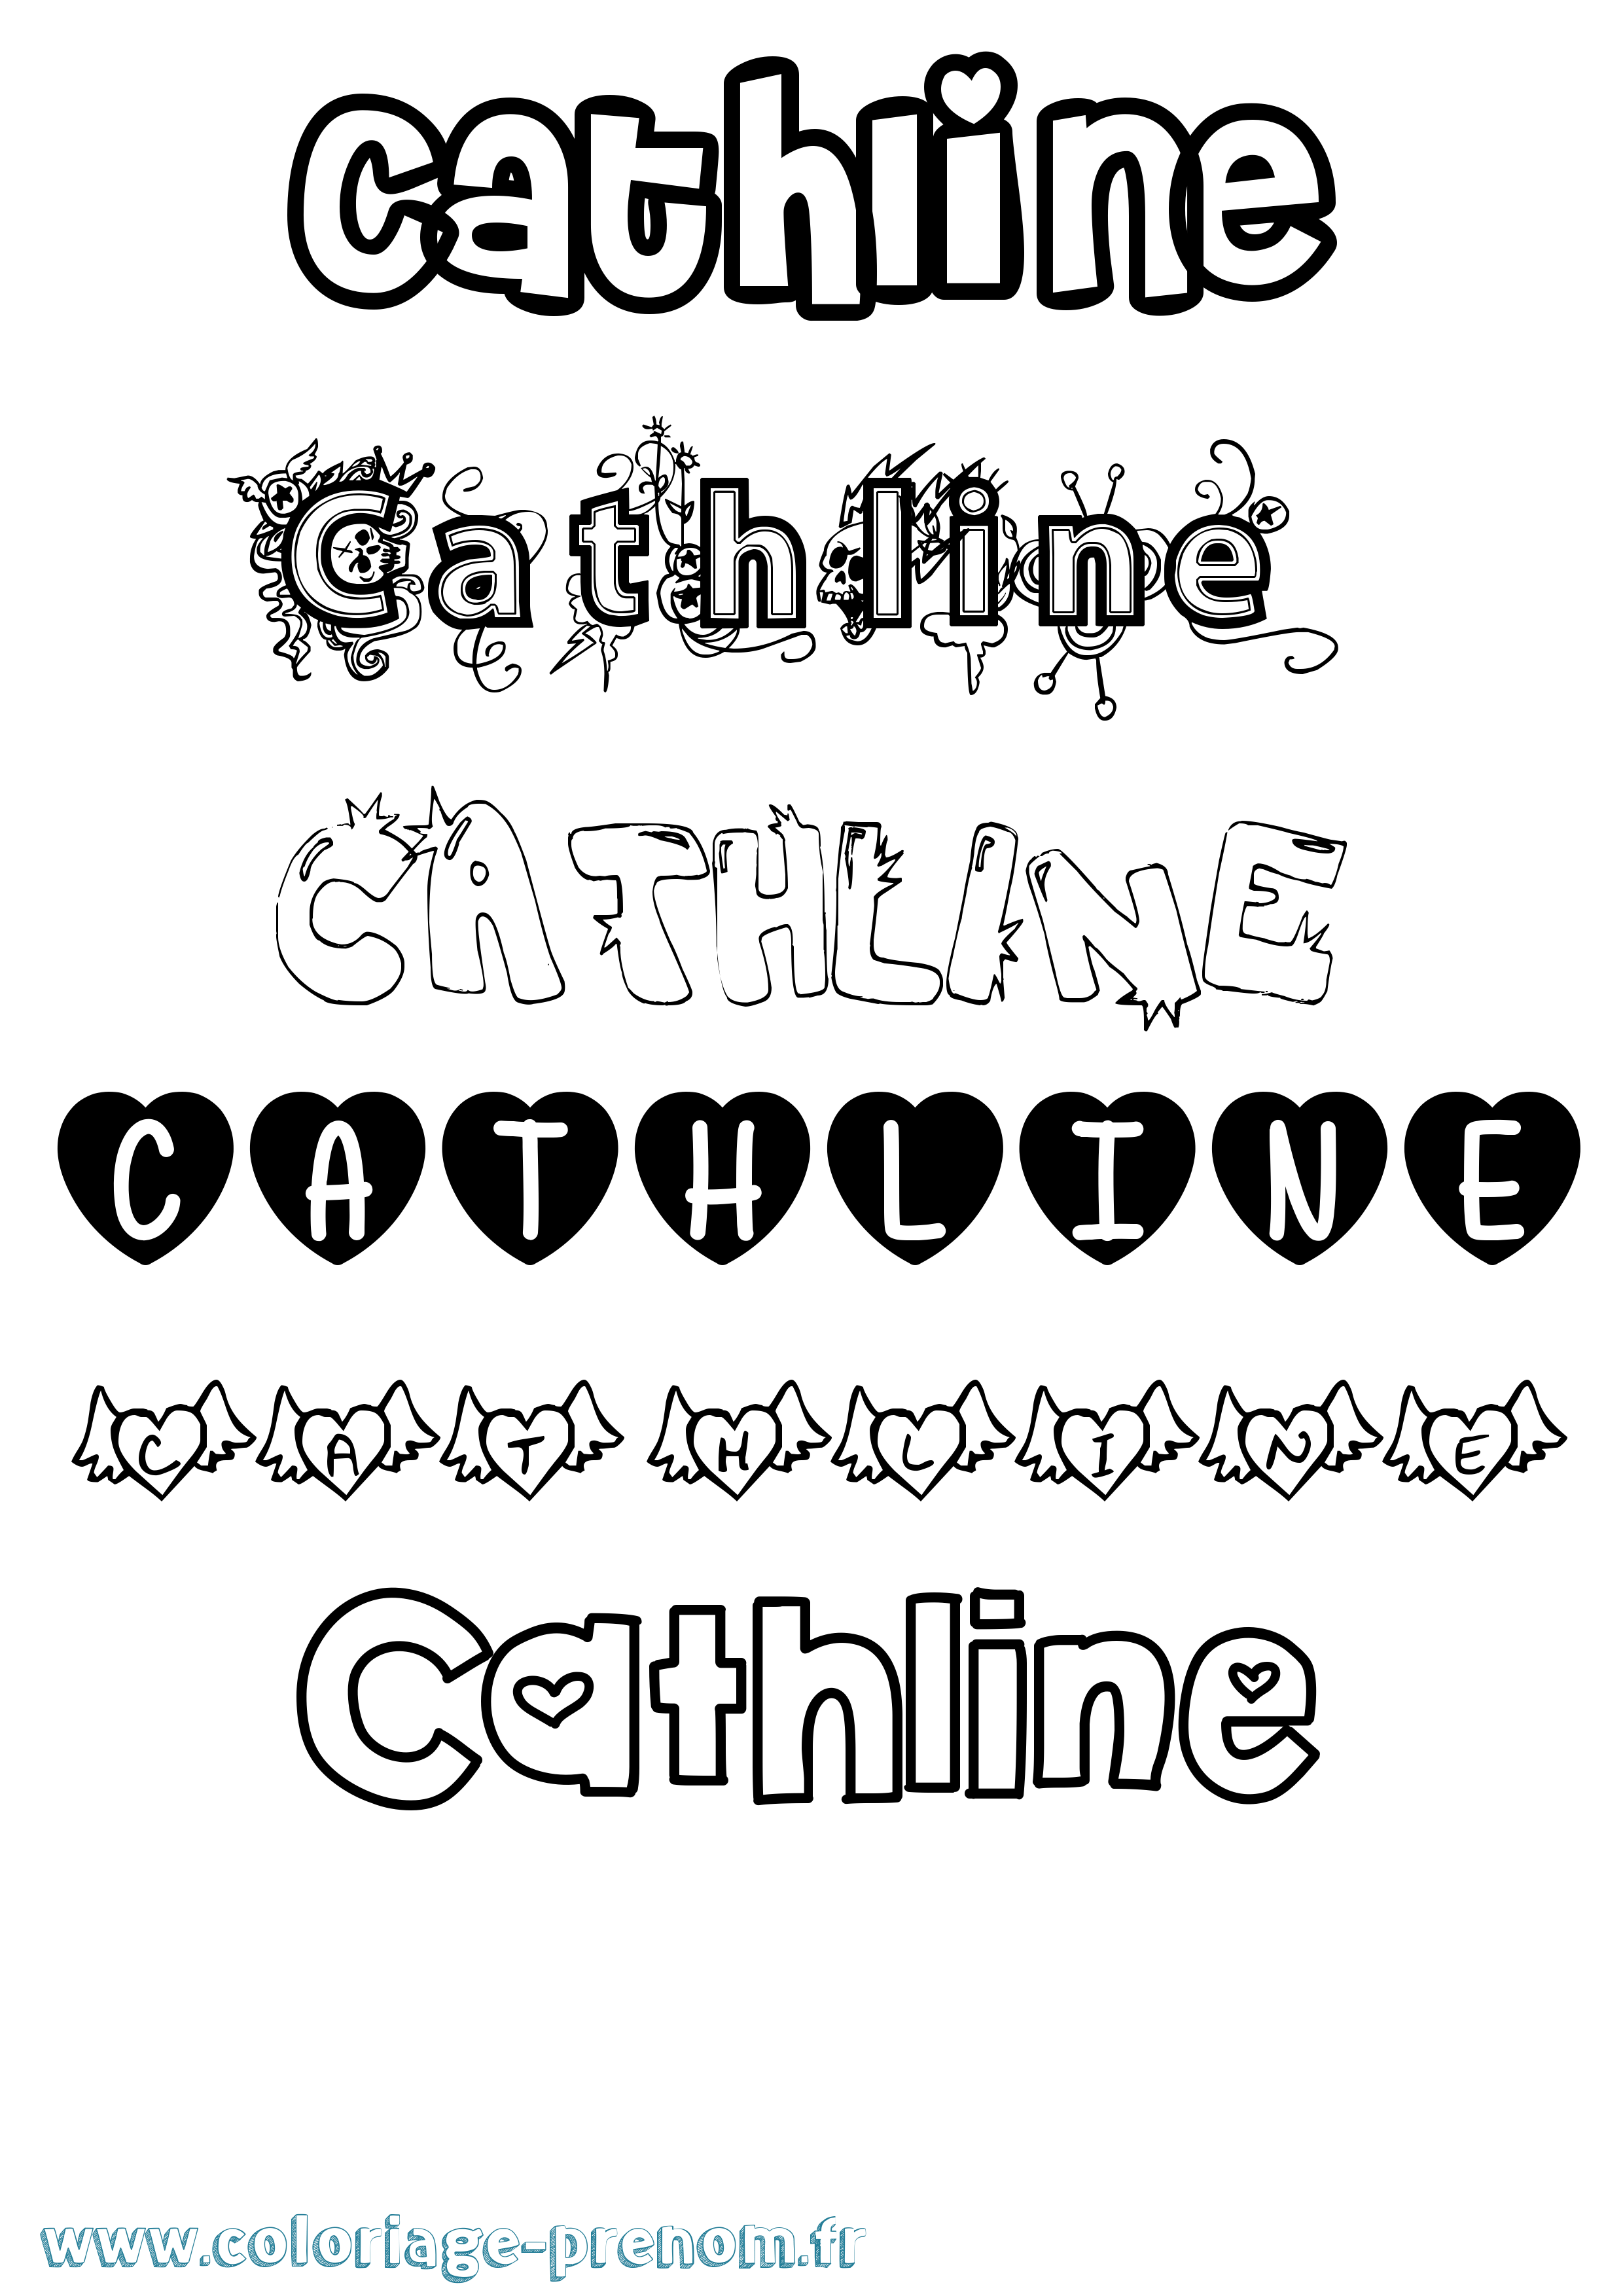 Coloriage prénom Cathline Girly